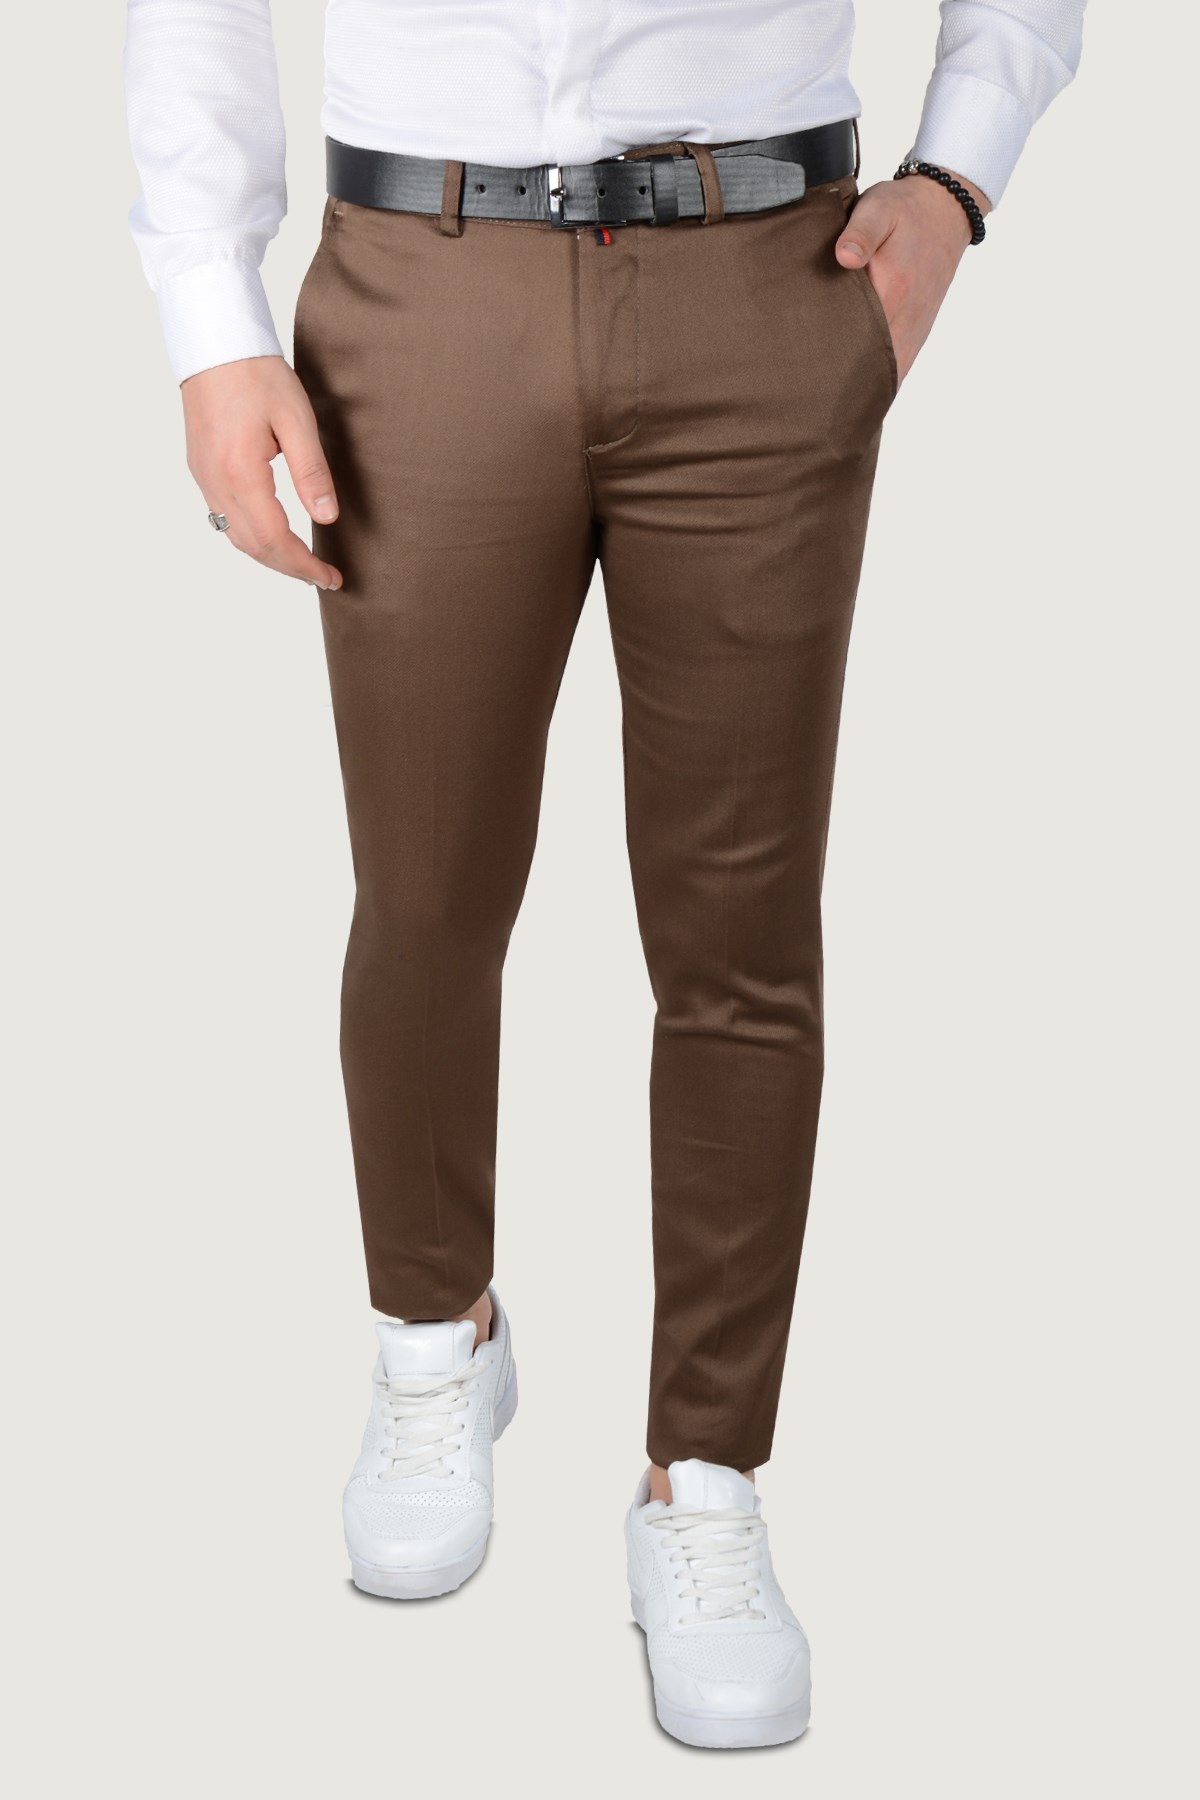 Erkek Keten Pantolon 9Y-2200203-100 Koyu Kahverengi | Terapi Giyim